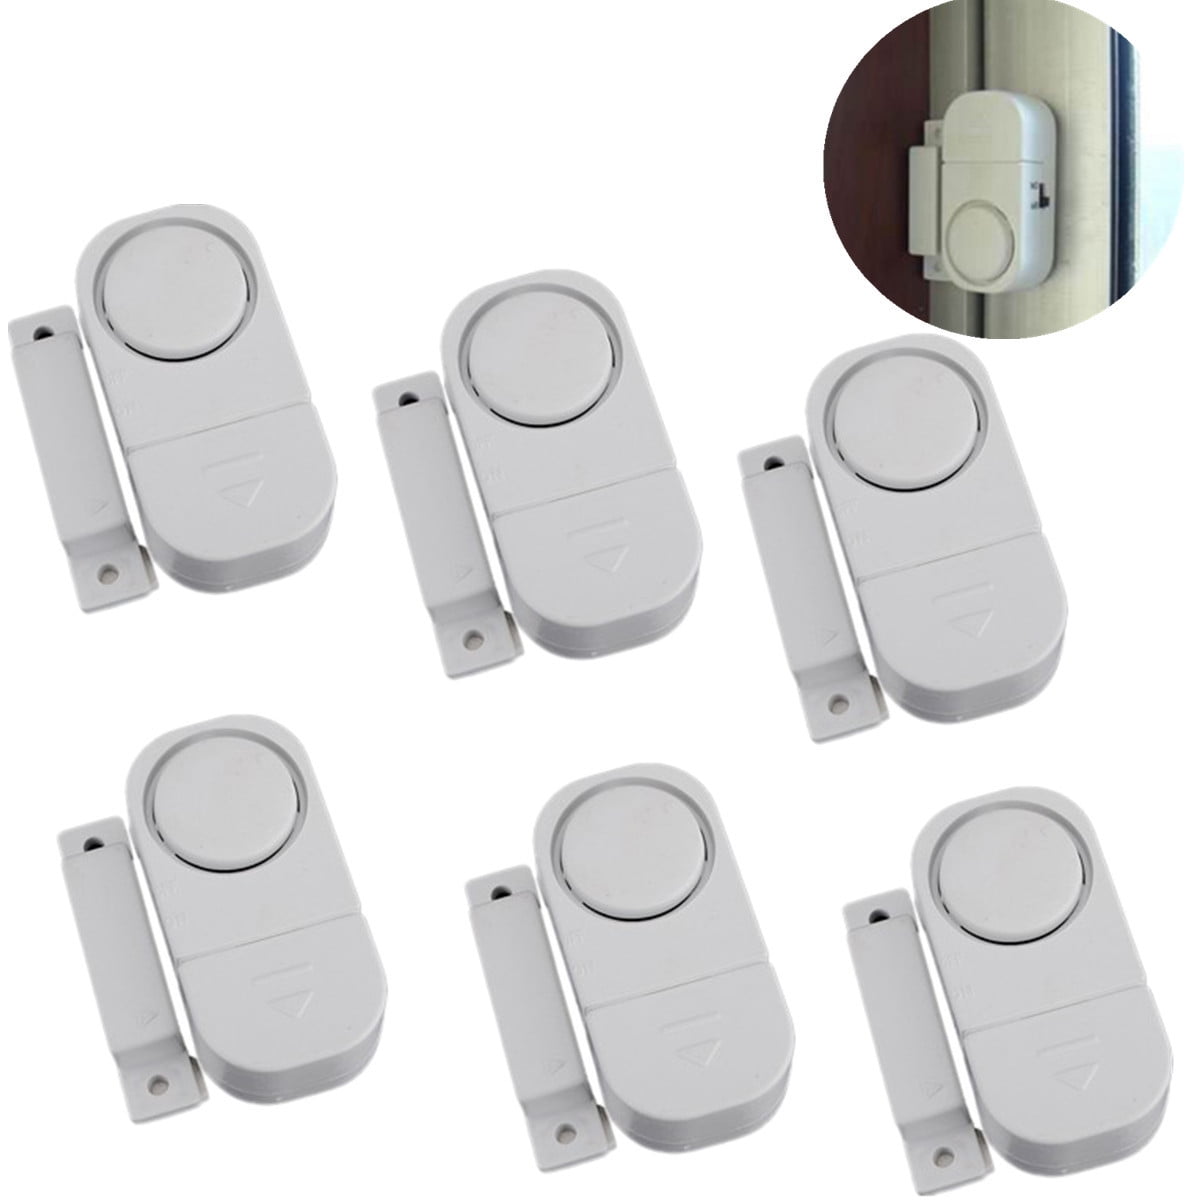 Wireless Door Window WiFi Magnetic APP Control Smart Home Security Burglar Alarm 